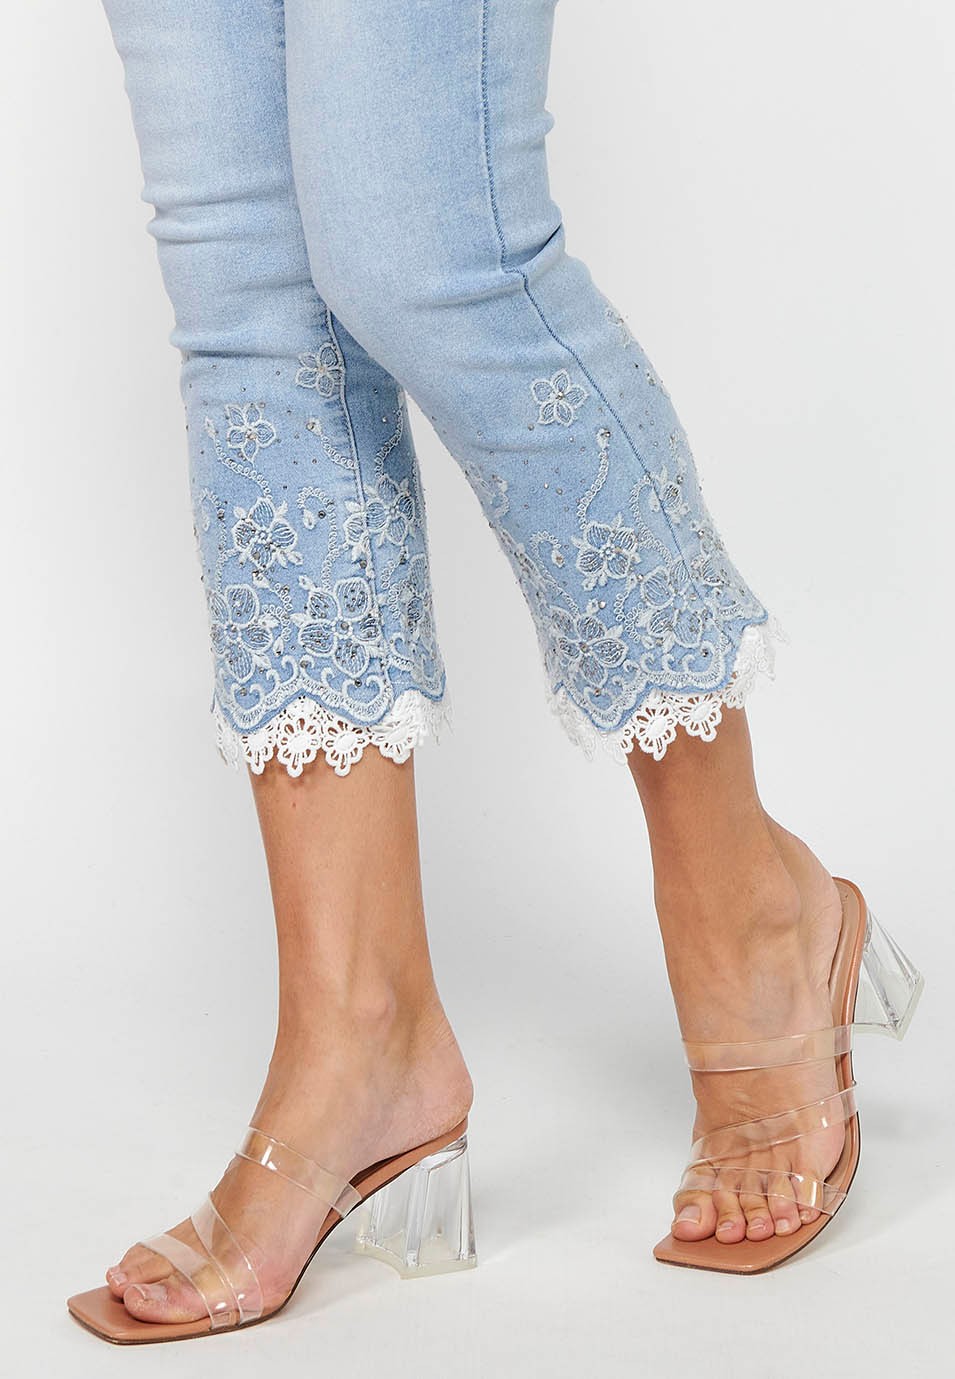 Pantalon long en jean slim avec fermeture éclair sur le devant et détails brodés de fleurs bleu clair pour femme 7